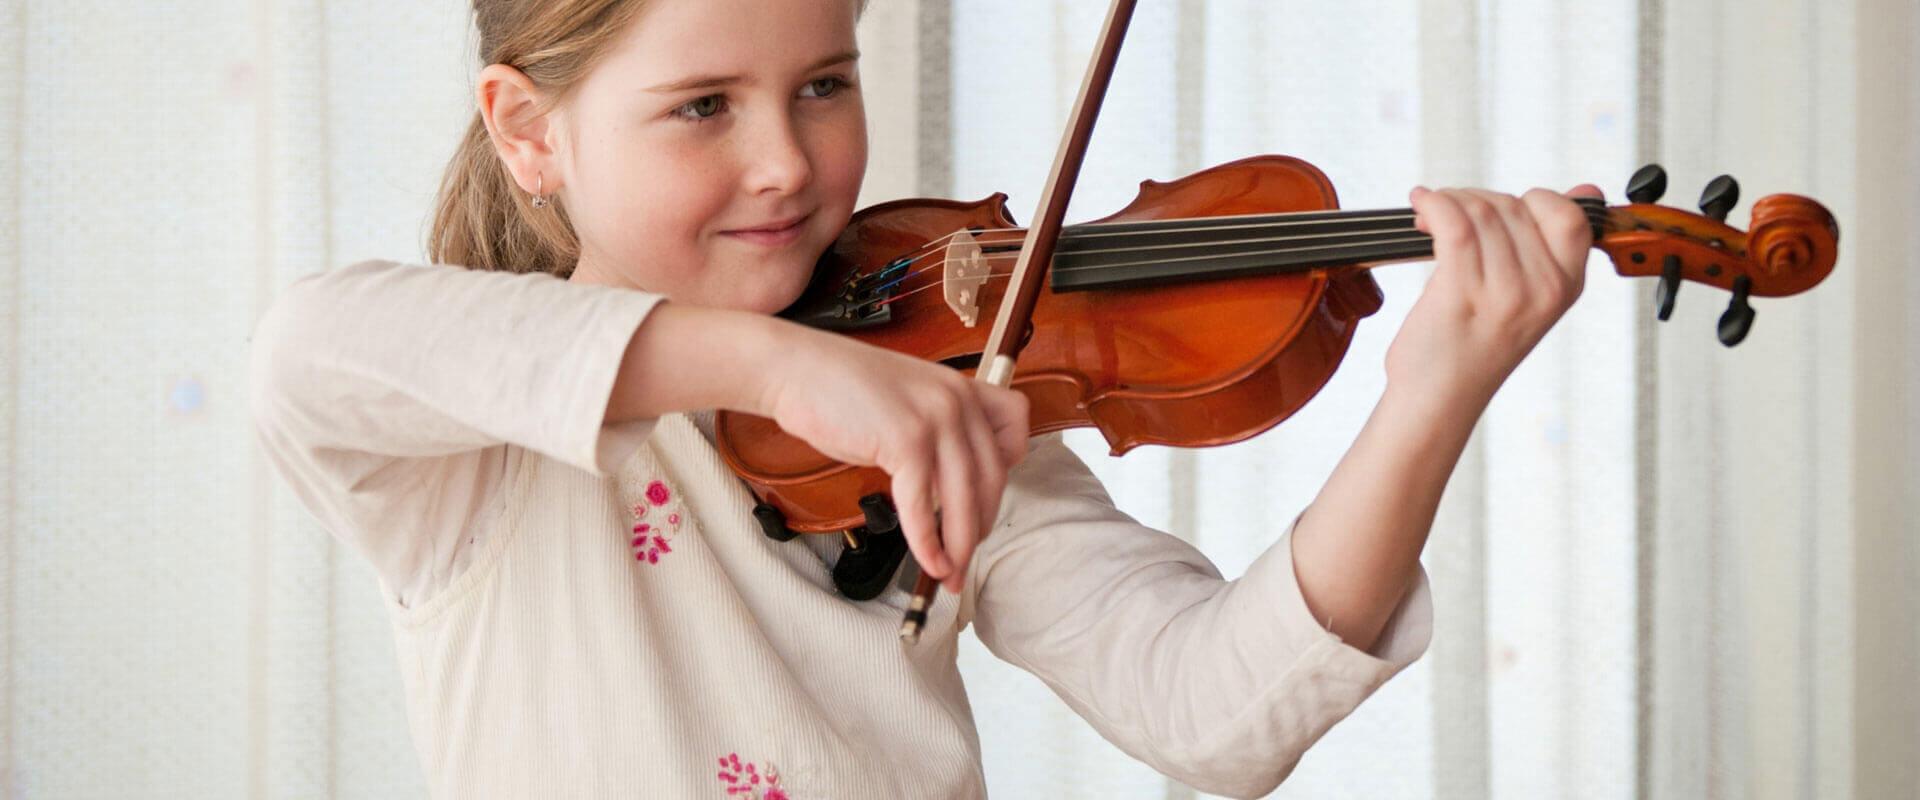 Violin Lessons Subn Md Fac , MD